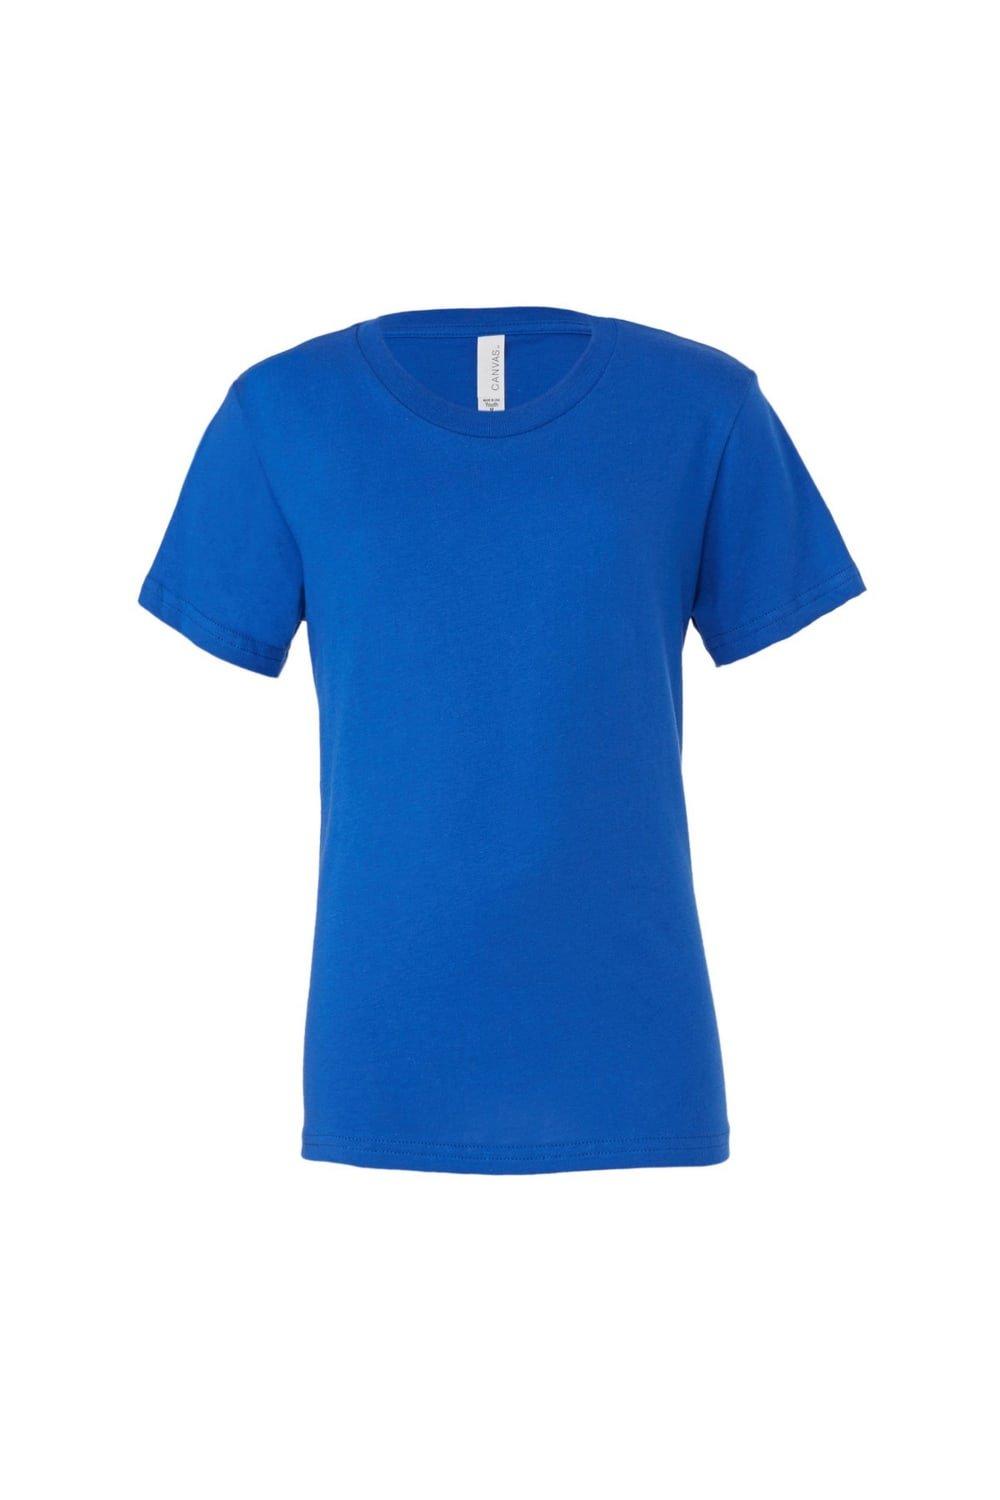 Молодежная футболка из джерси с короткими рукавами Bella + Canvas, синий сигел рик розничная торговля для чайников